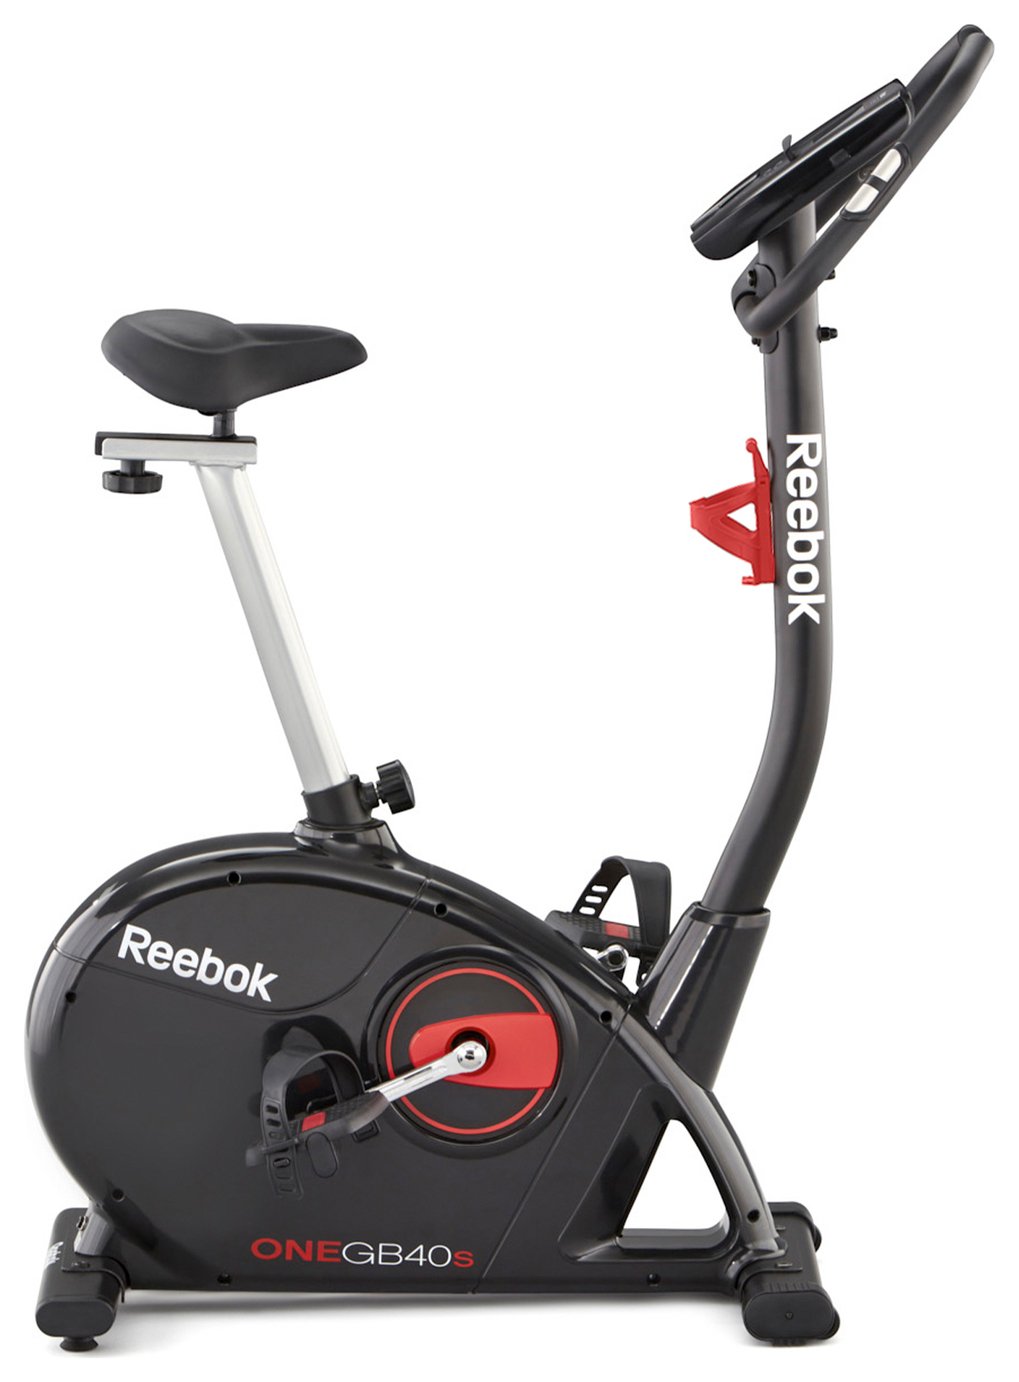 reebok exercise bike instructions